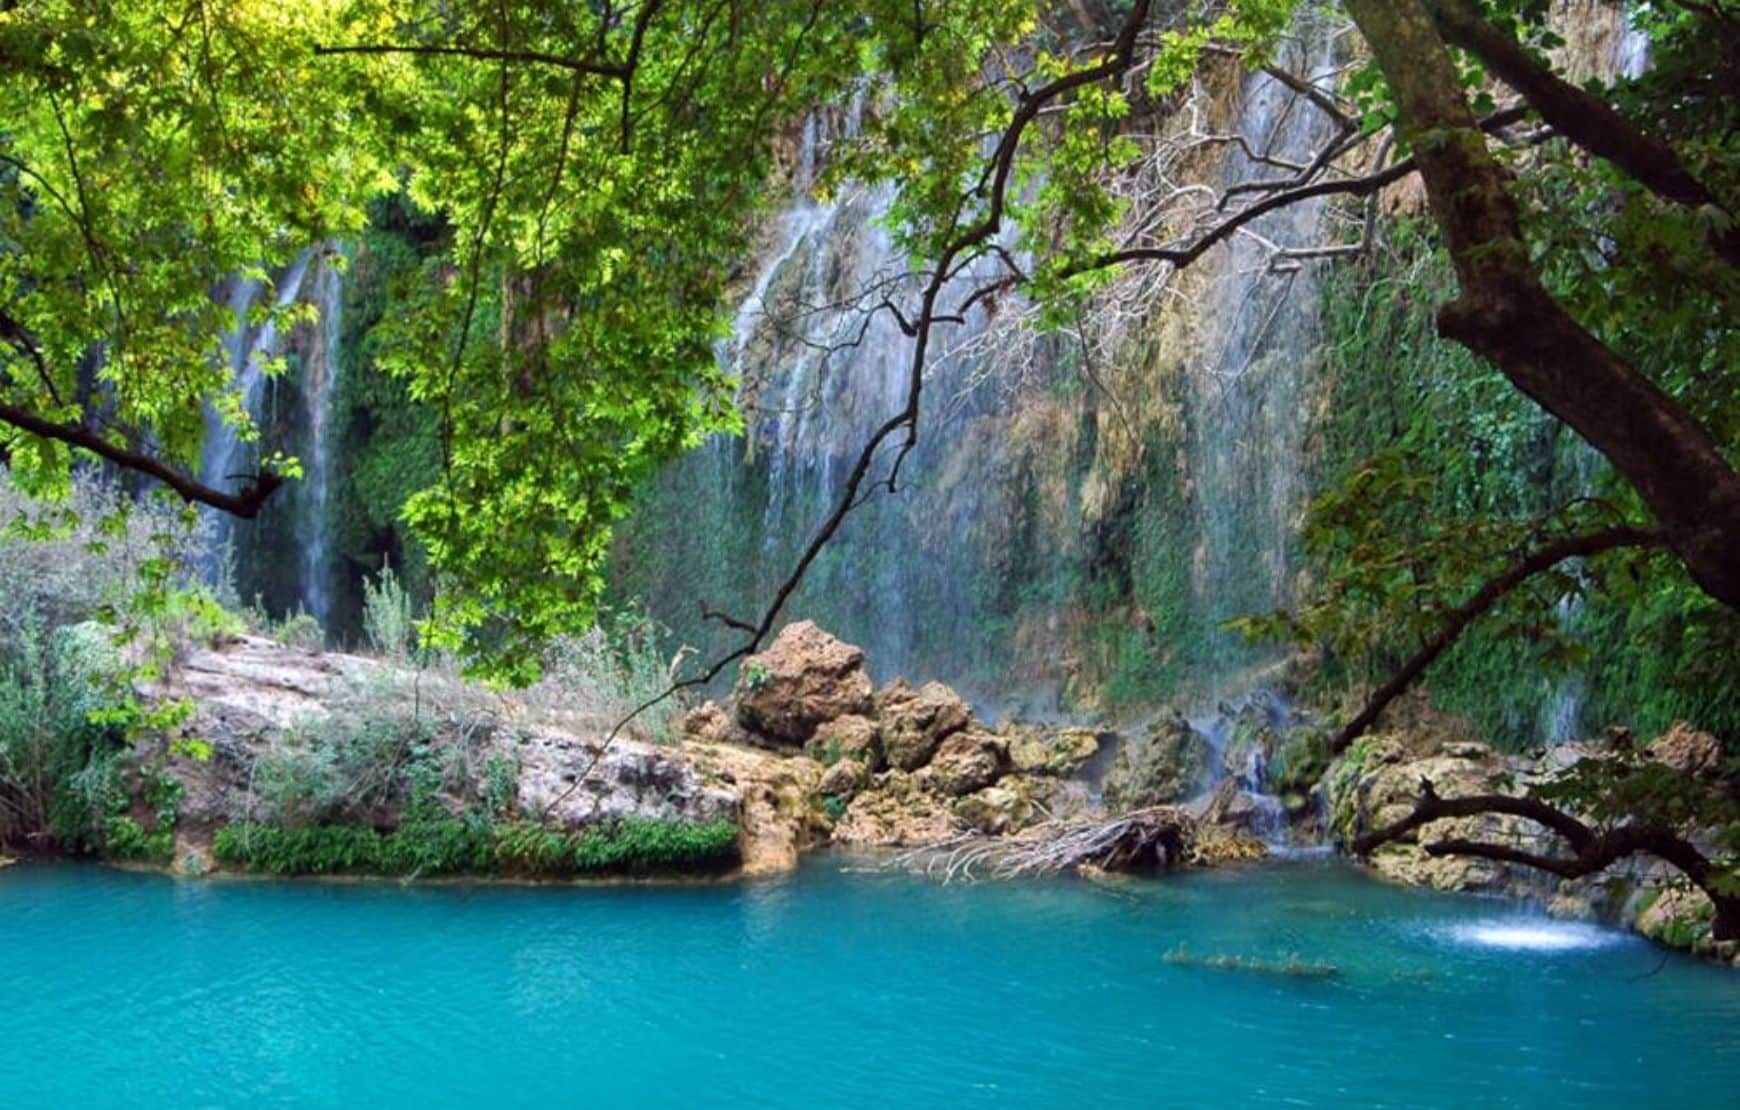 Kursunlu Waterfall in Antalya